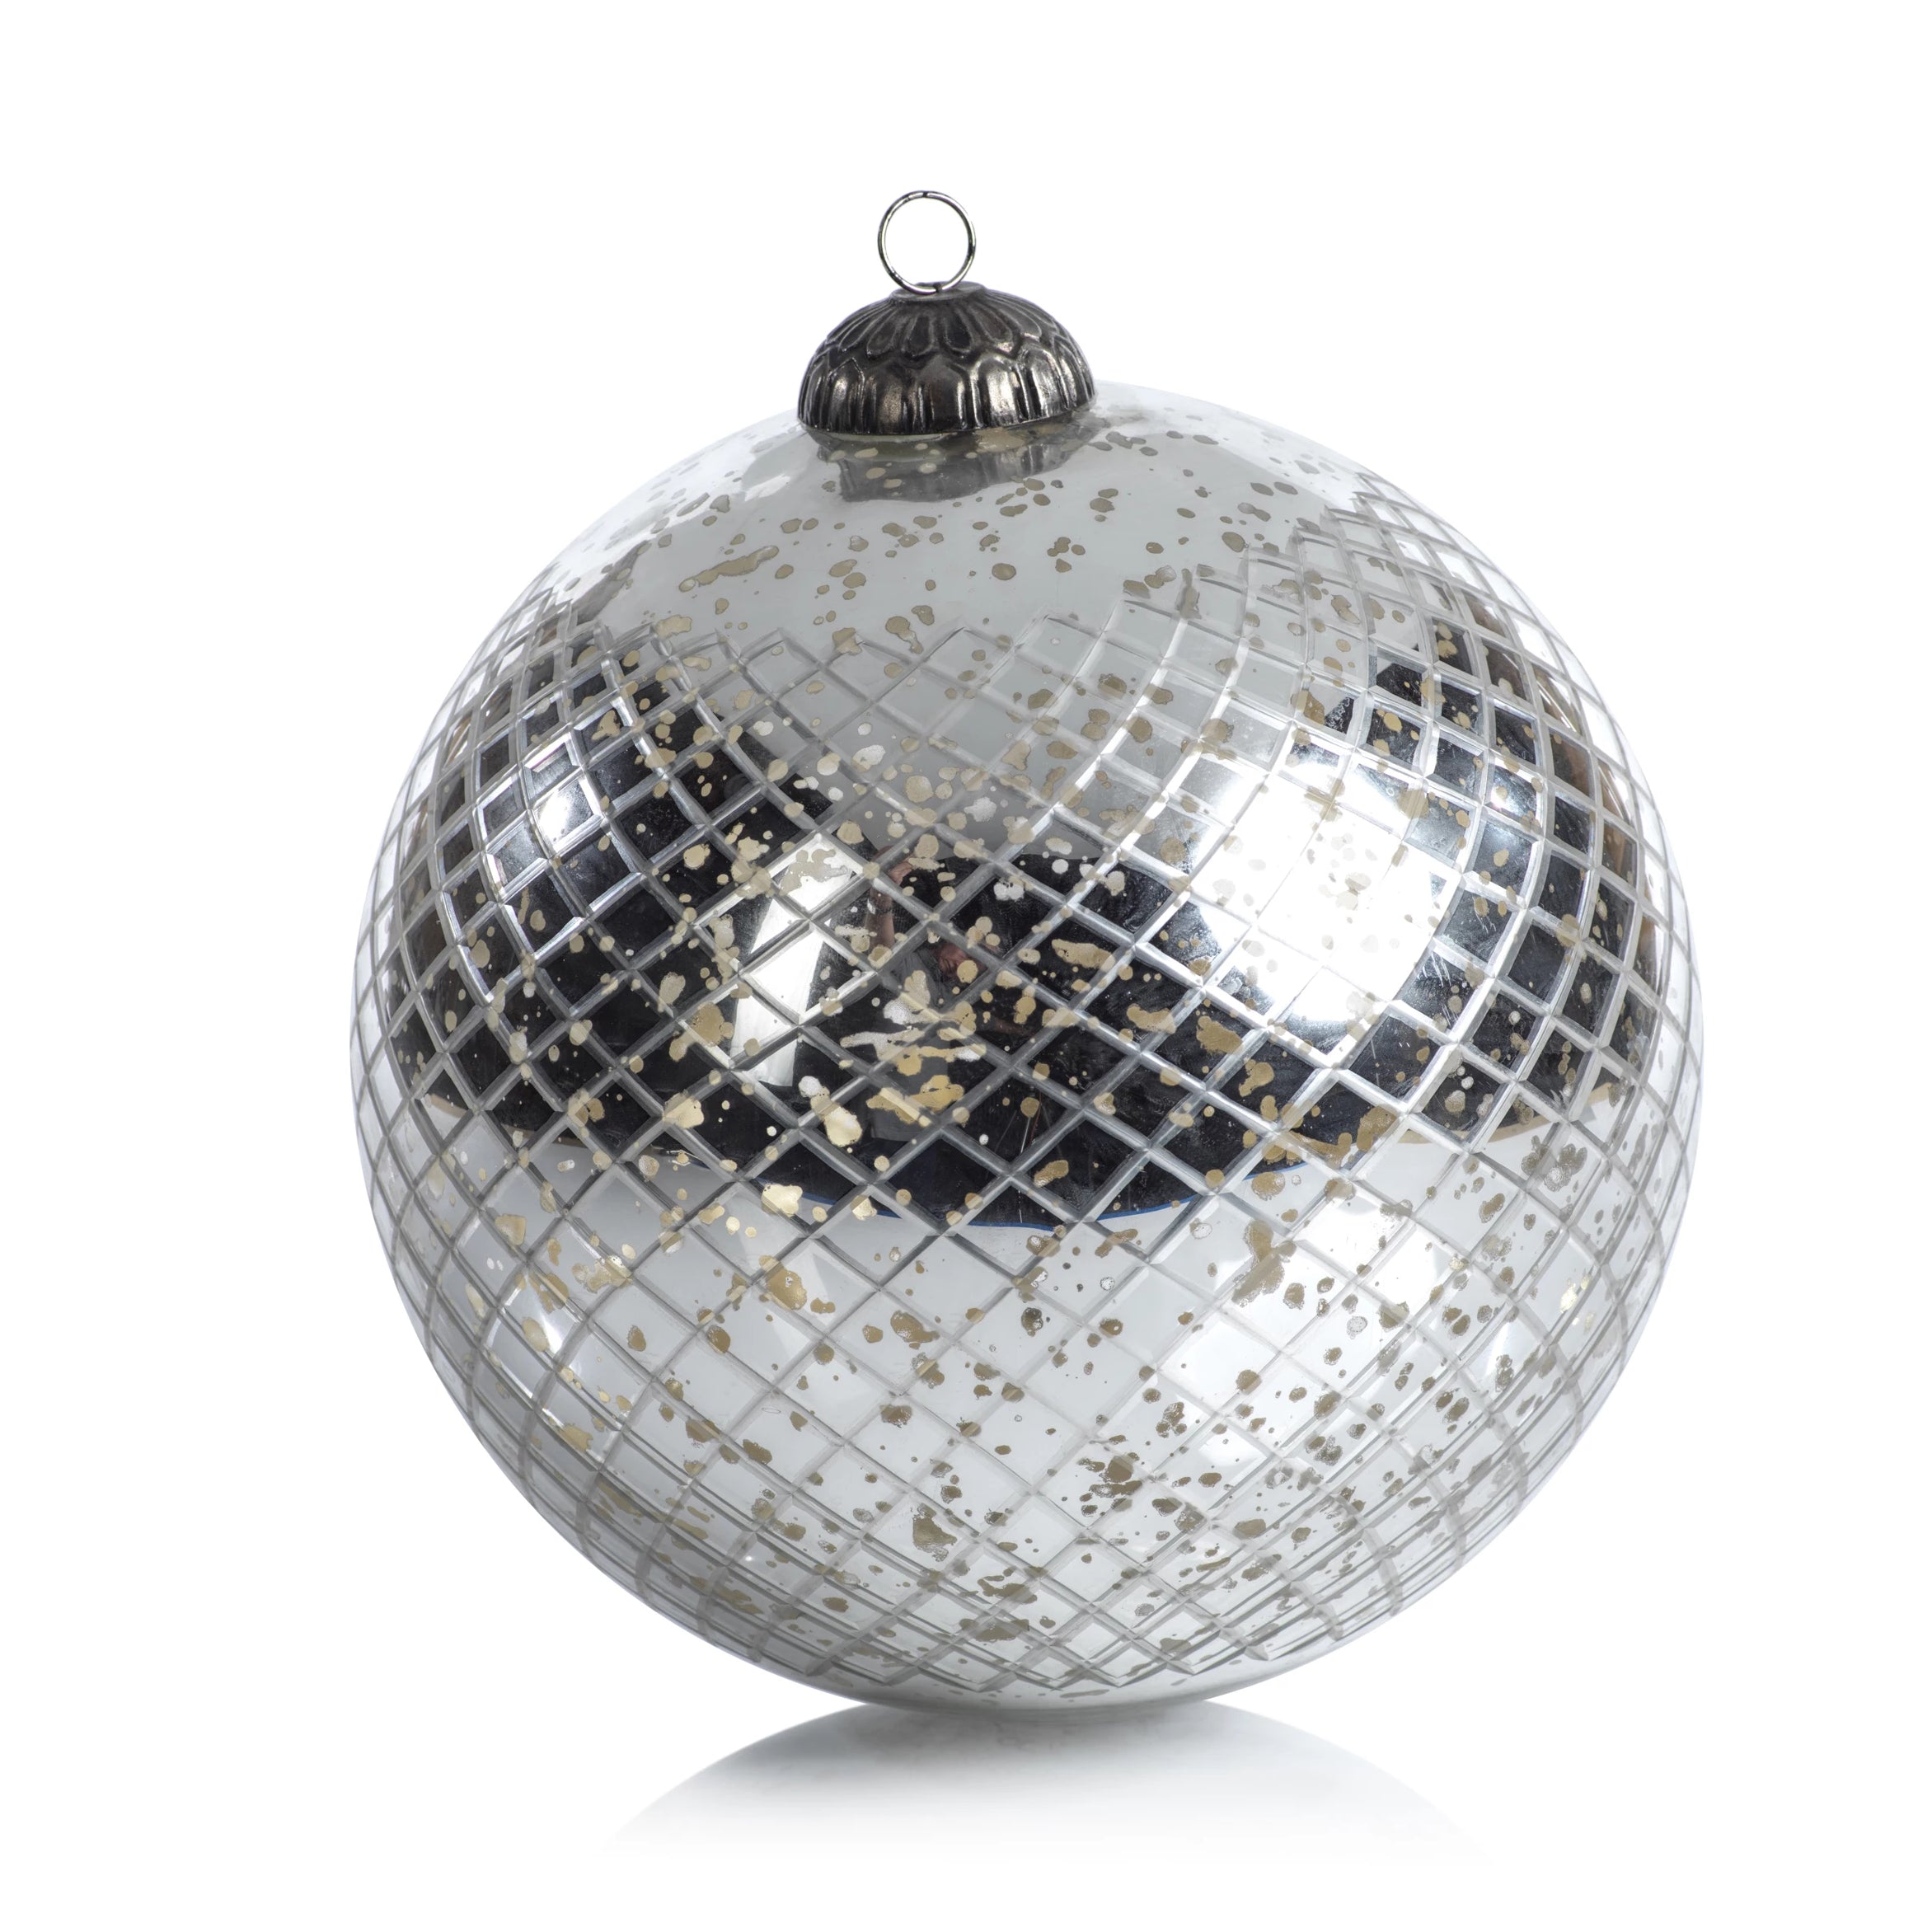 Diamond Cut Ball Ornament - Antique Silver - CARLYLE AVENUE